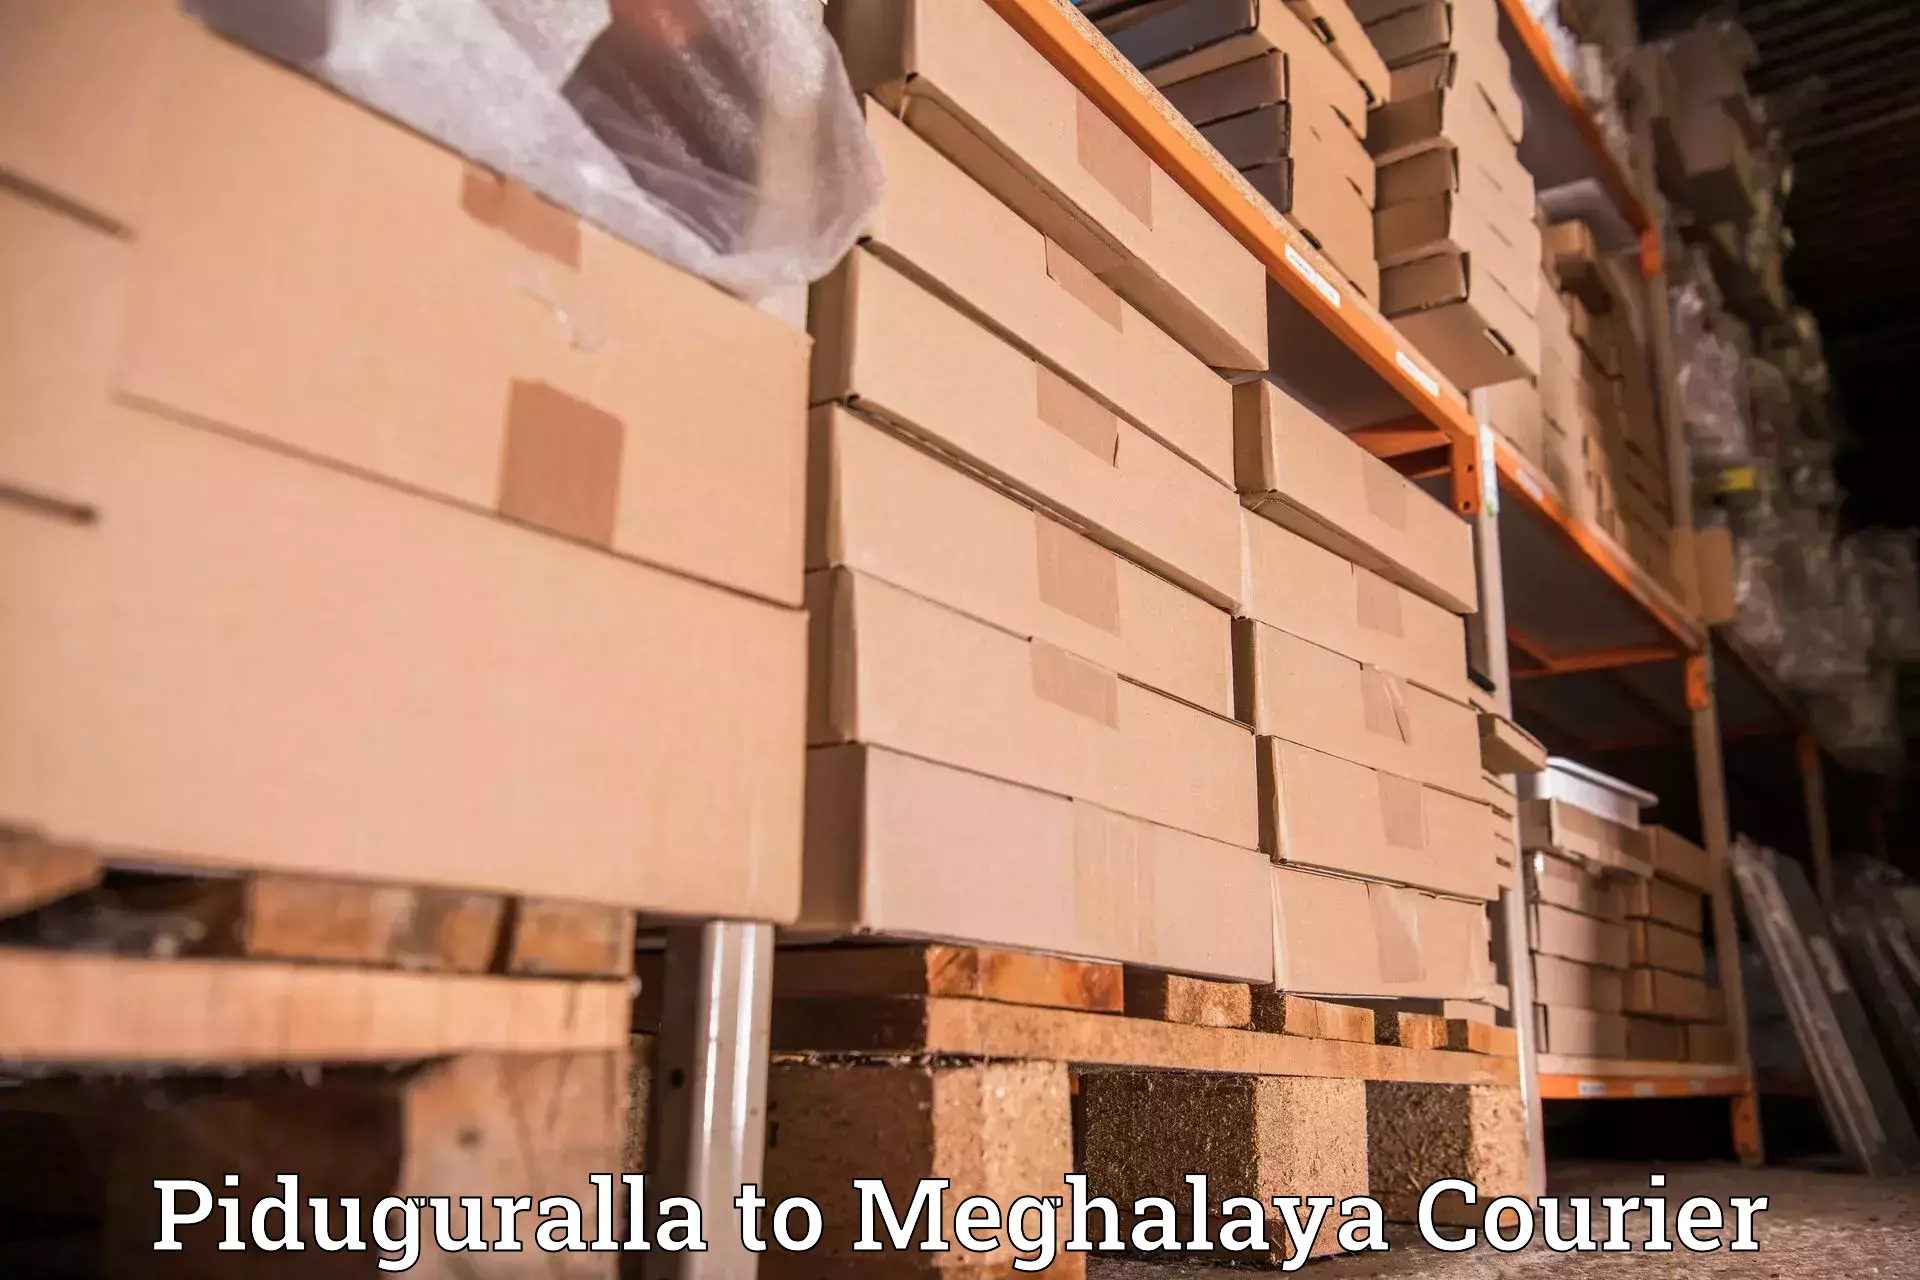 Local delivery service Piduguralla to Tura